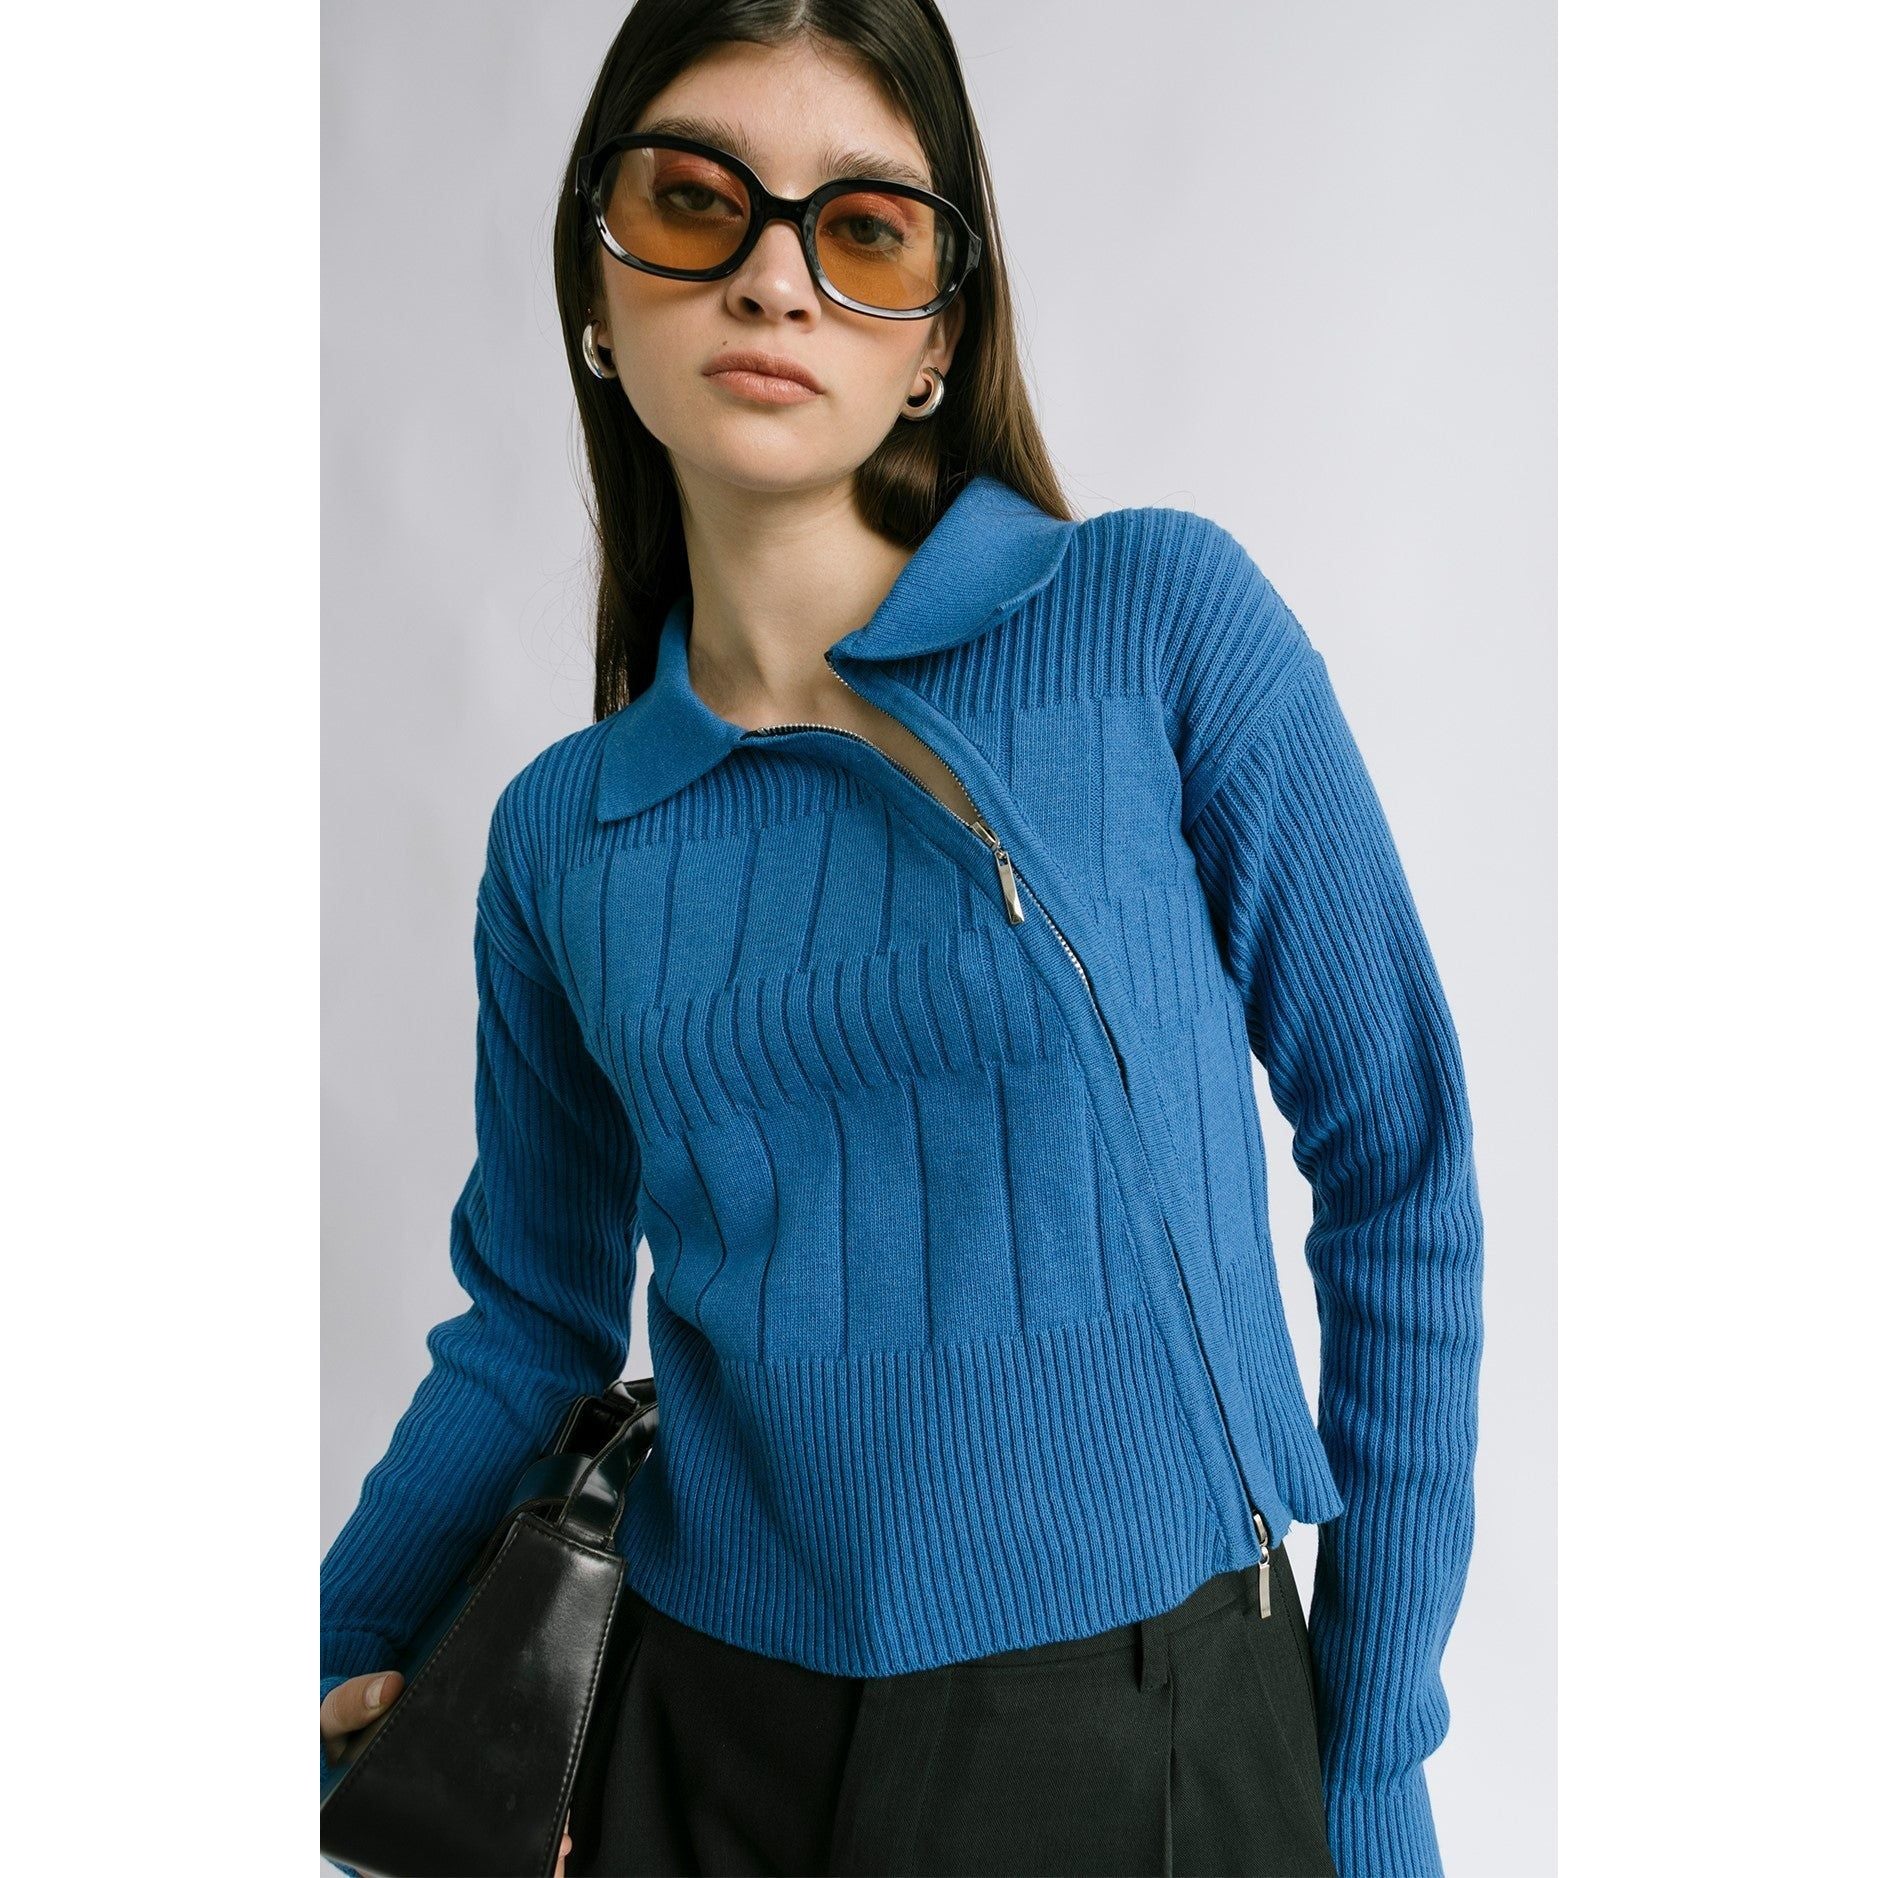 Off-Duty Sweater Blue